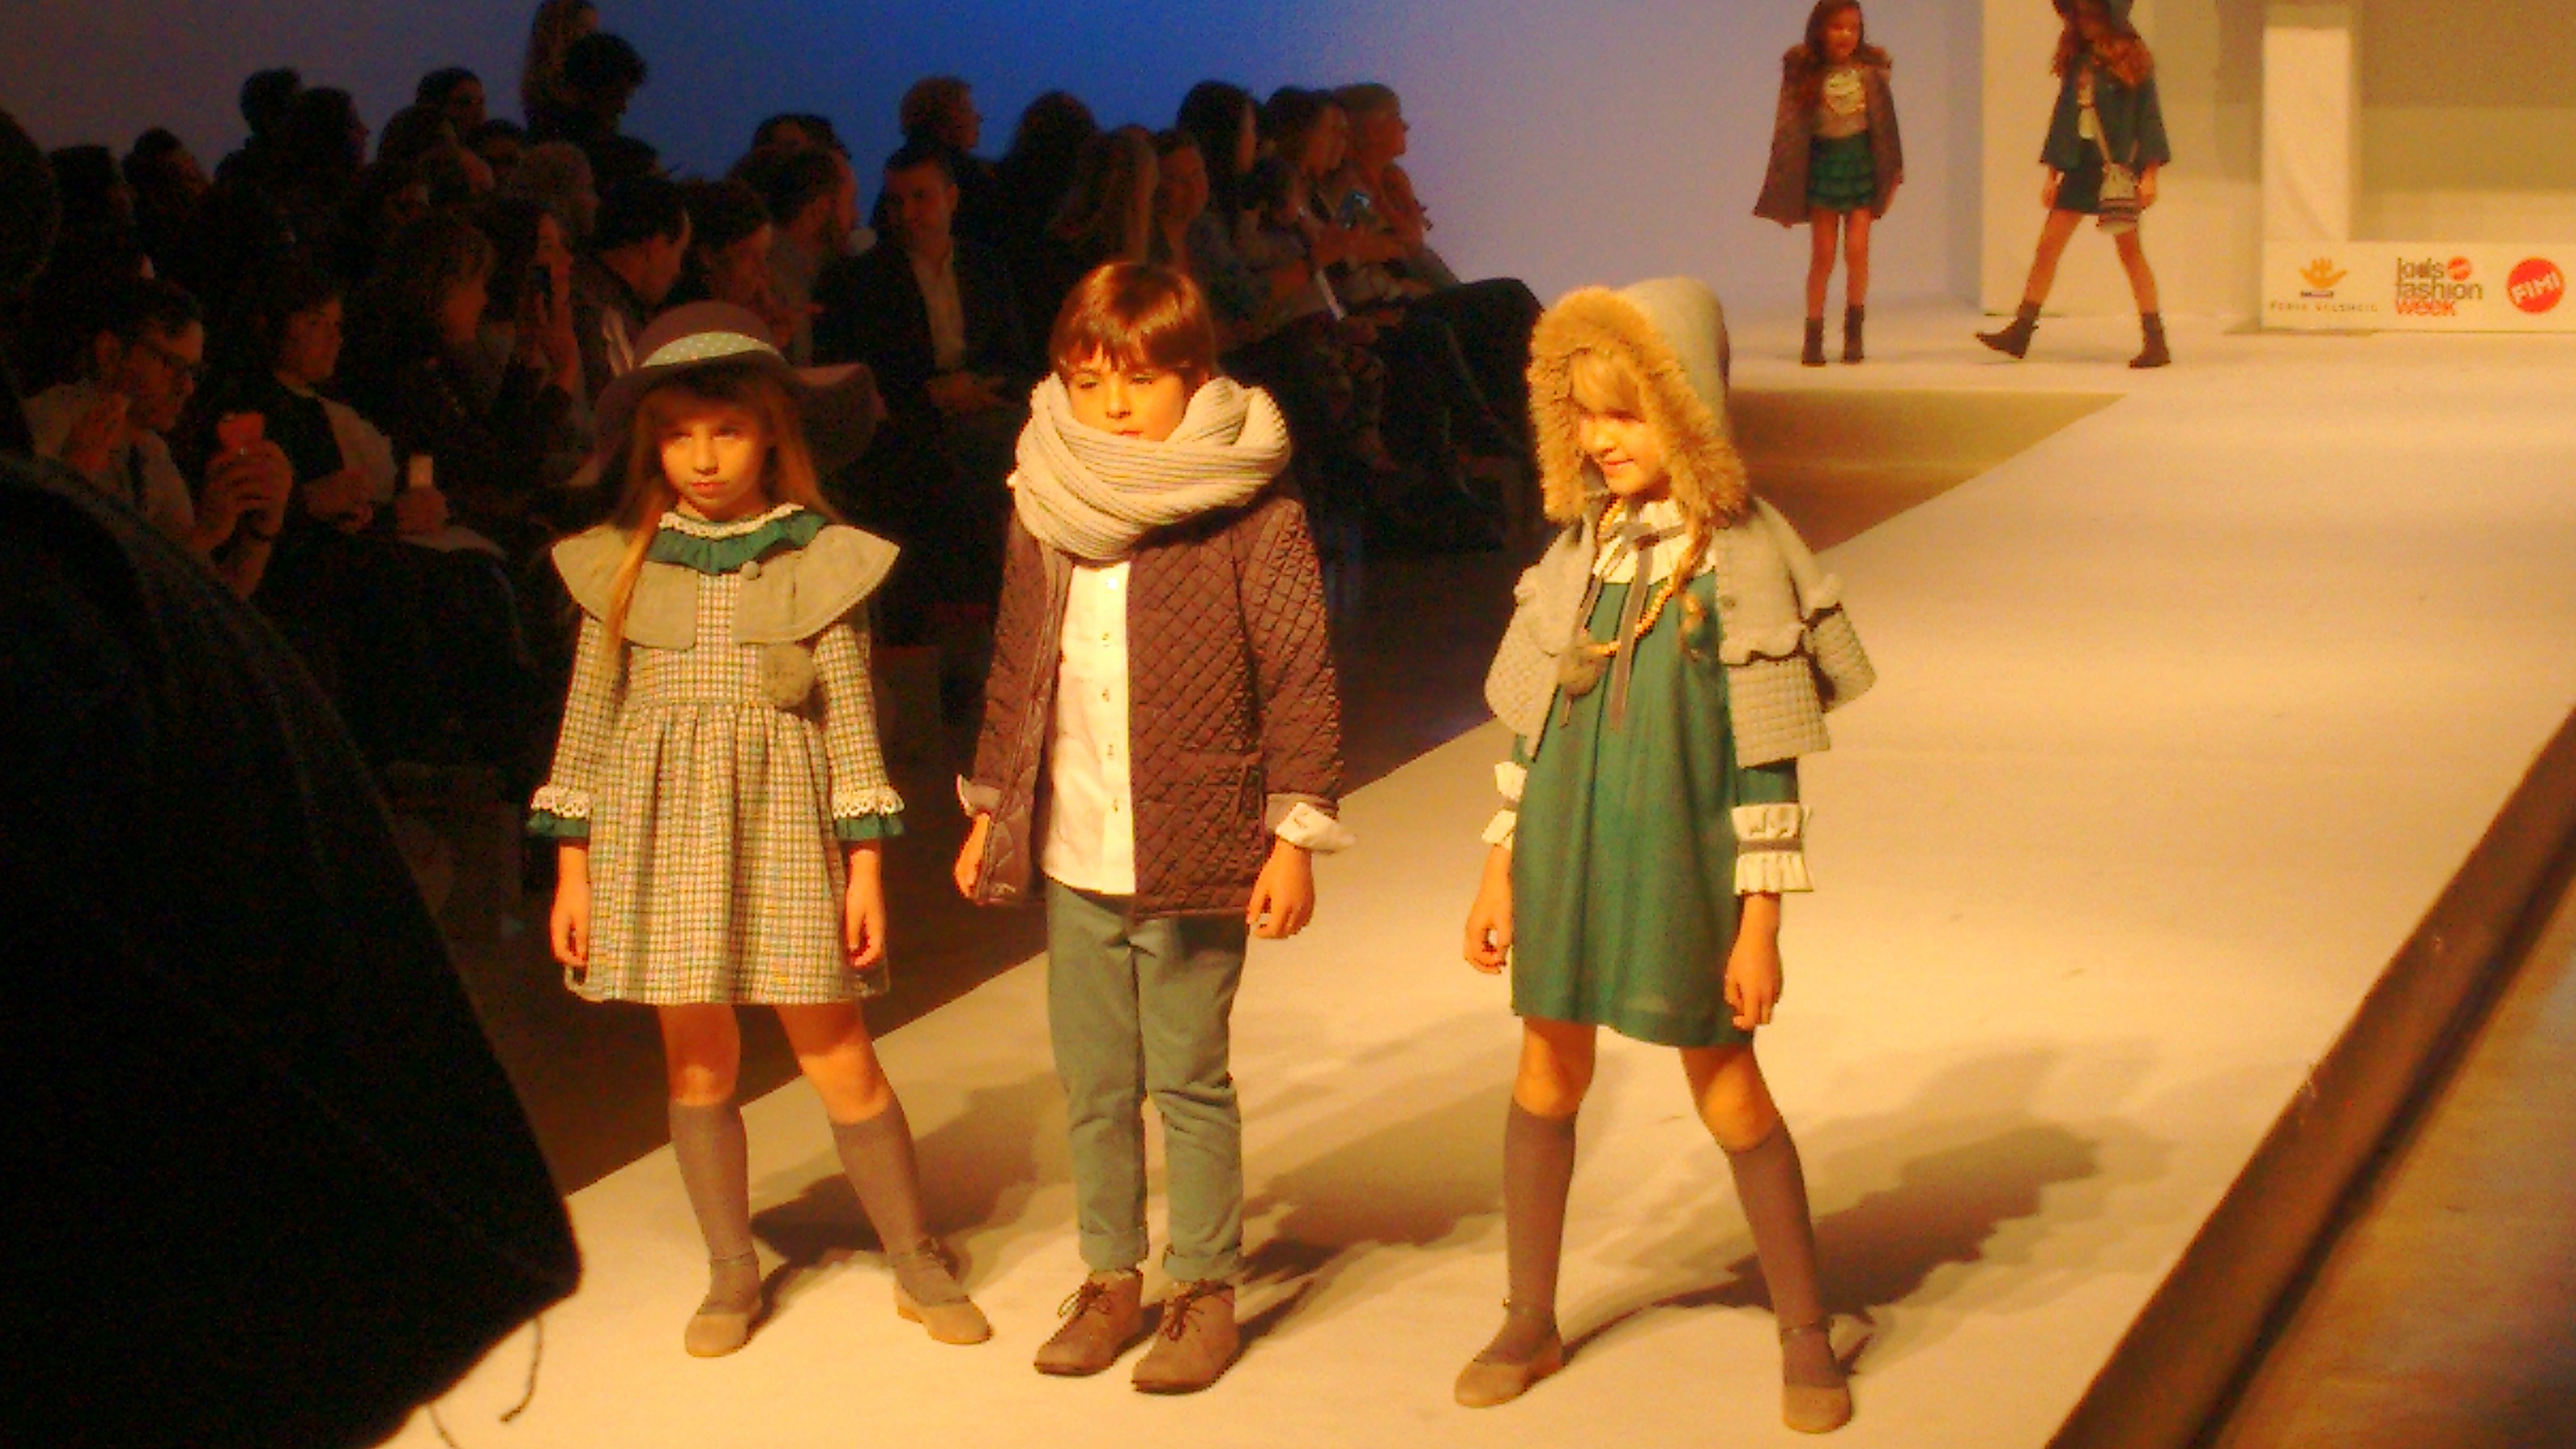 Bóboli moda infantil otoño invierno 2016